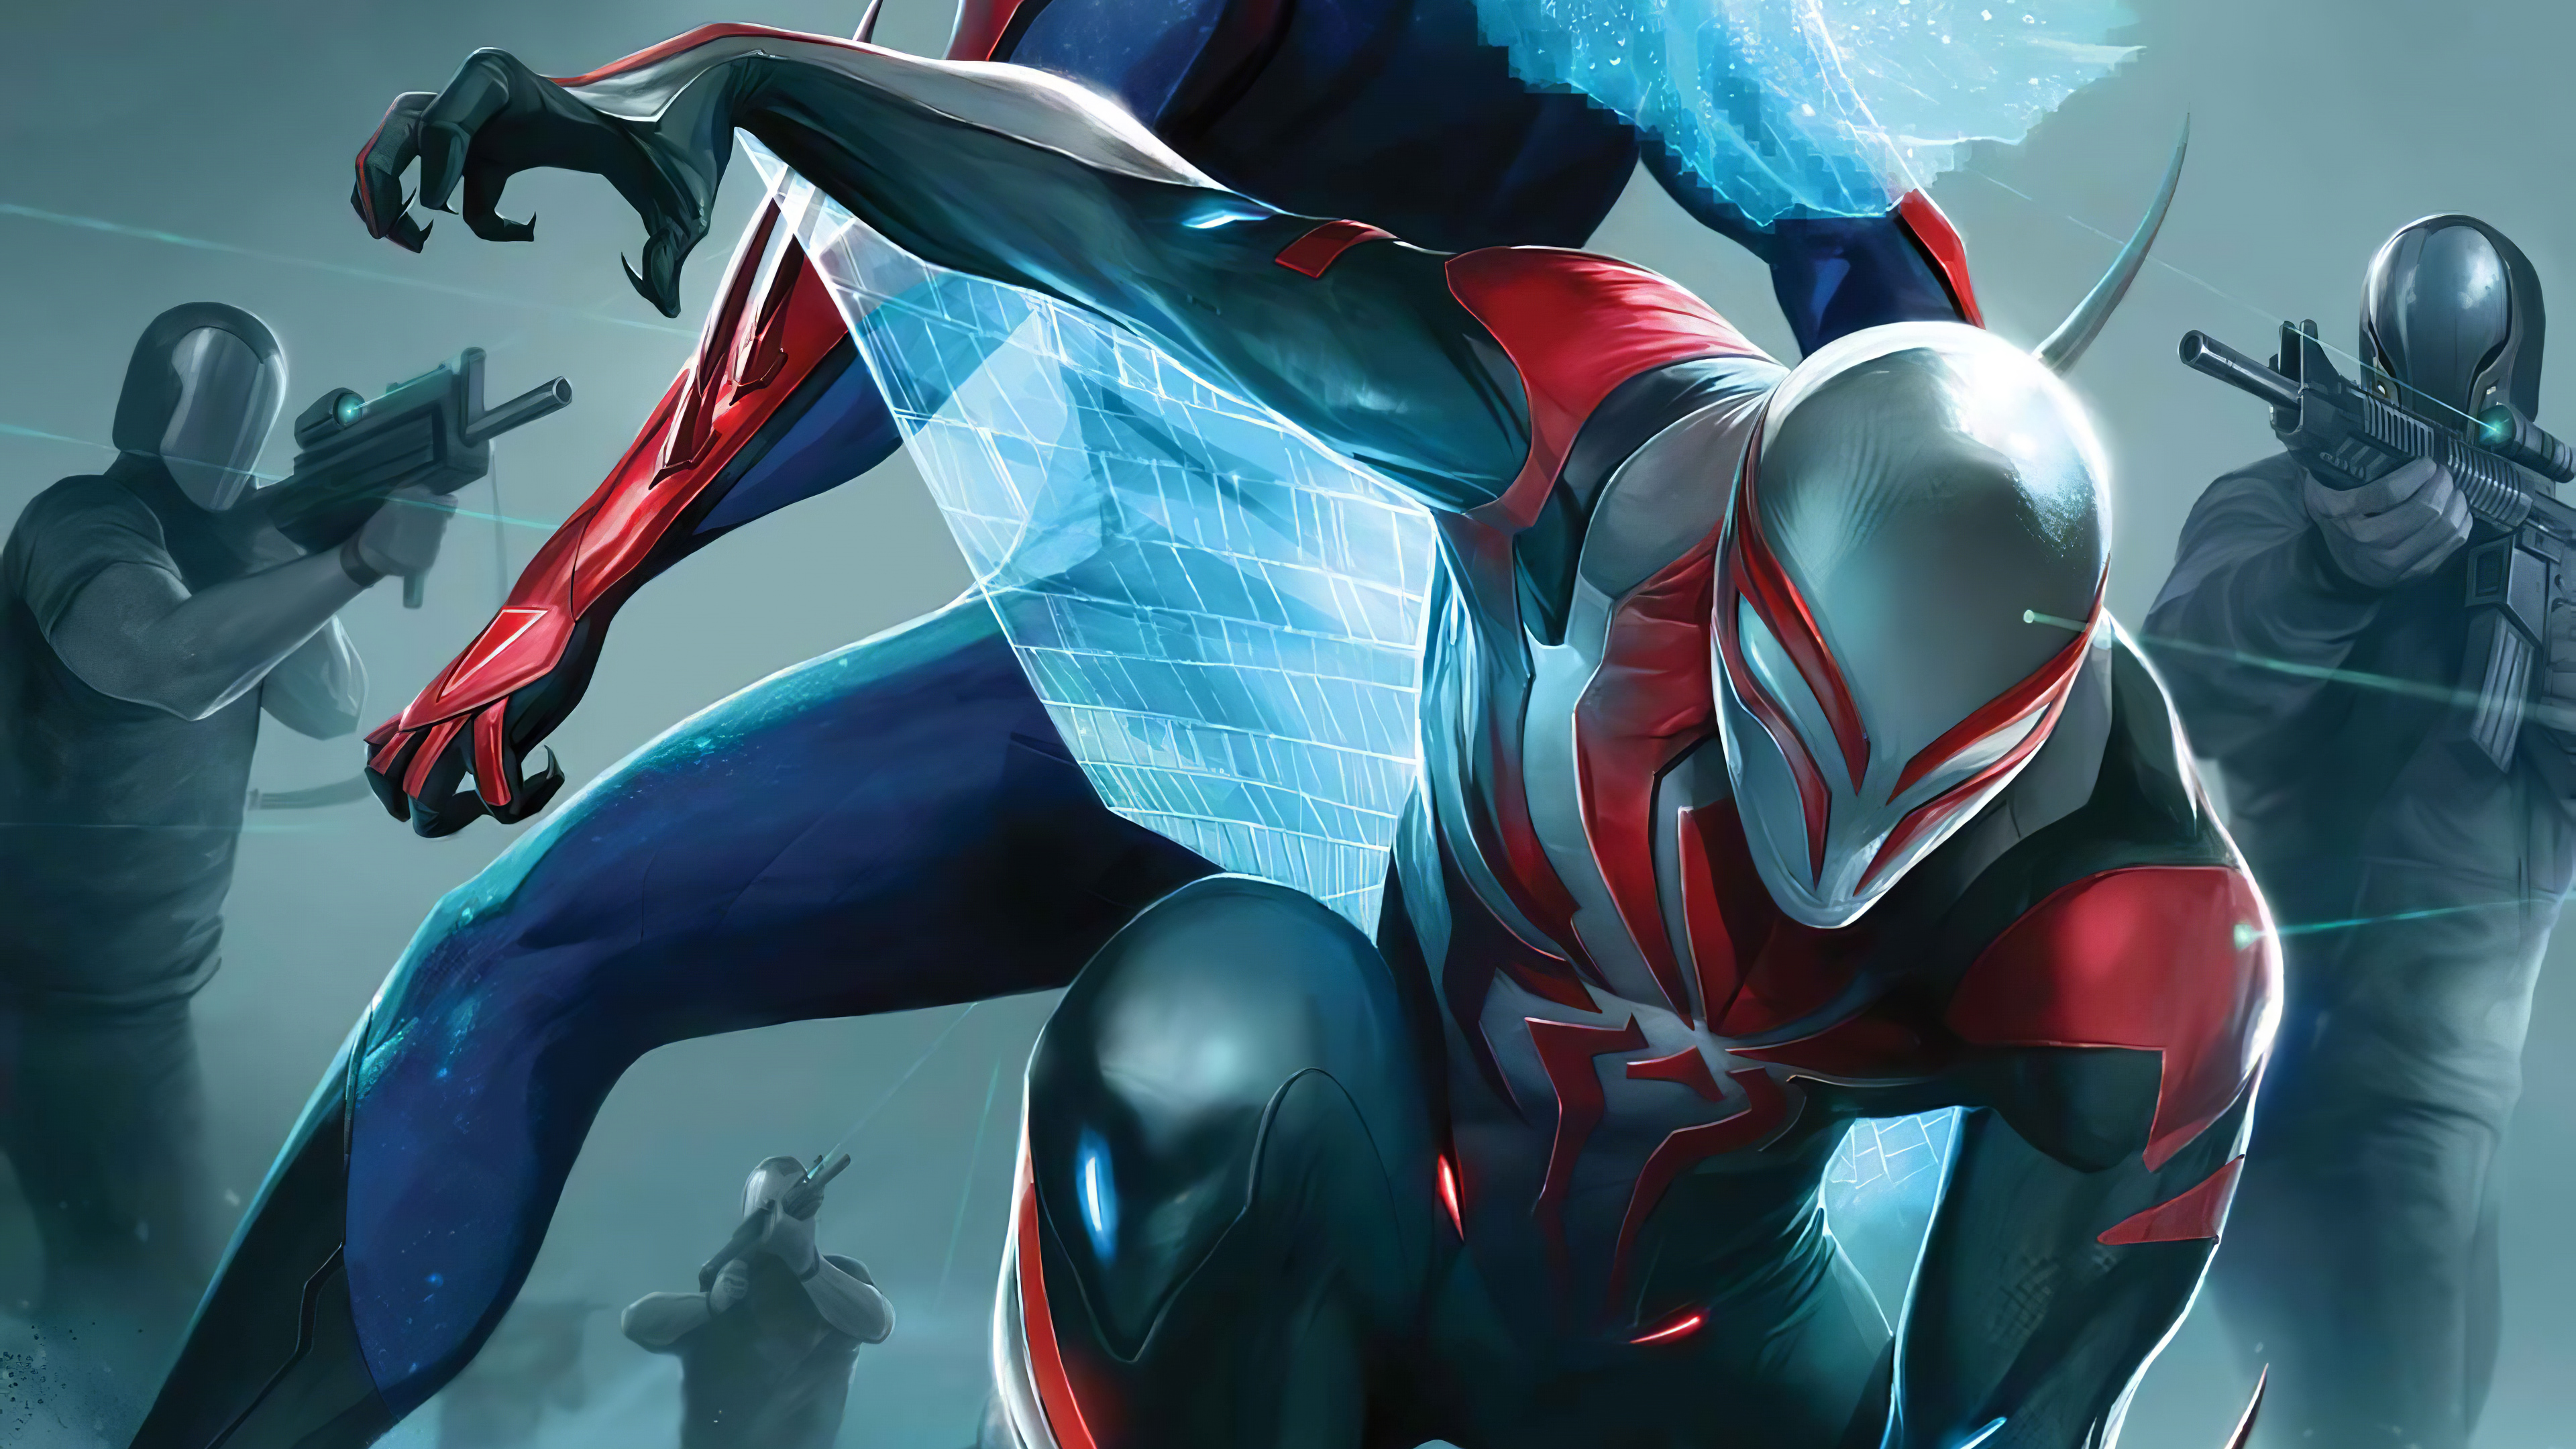 Bạn là một game thủ yêu thích Fortnite? Bạn sẽ không muốn bỏ qua bộ sưu tập Spider-Man Fortnite Skin Mobile Wallpaper, với những hình nền siêu đẹp và chất lượng cao về nhân vật Spider-Man được thêm vào trò chơi Fortnite.